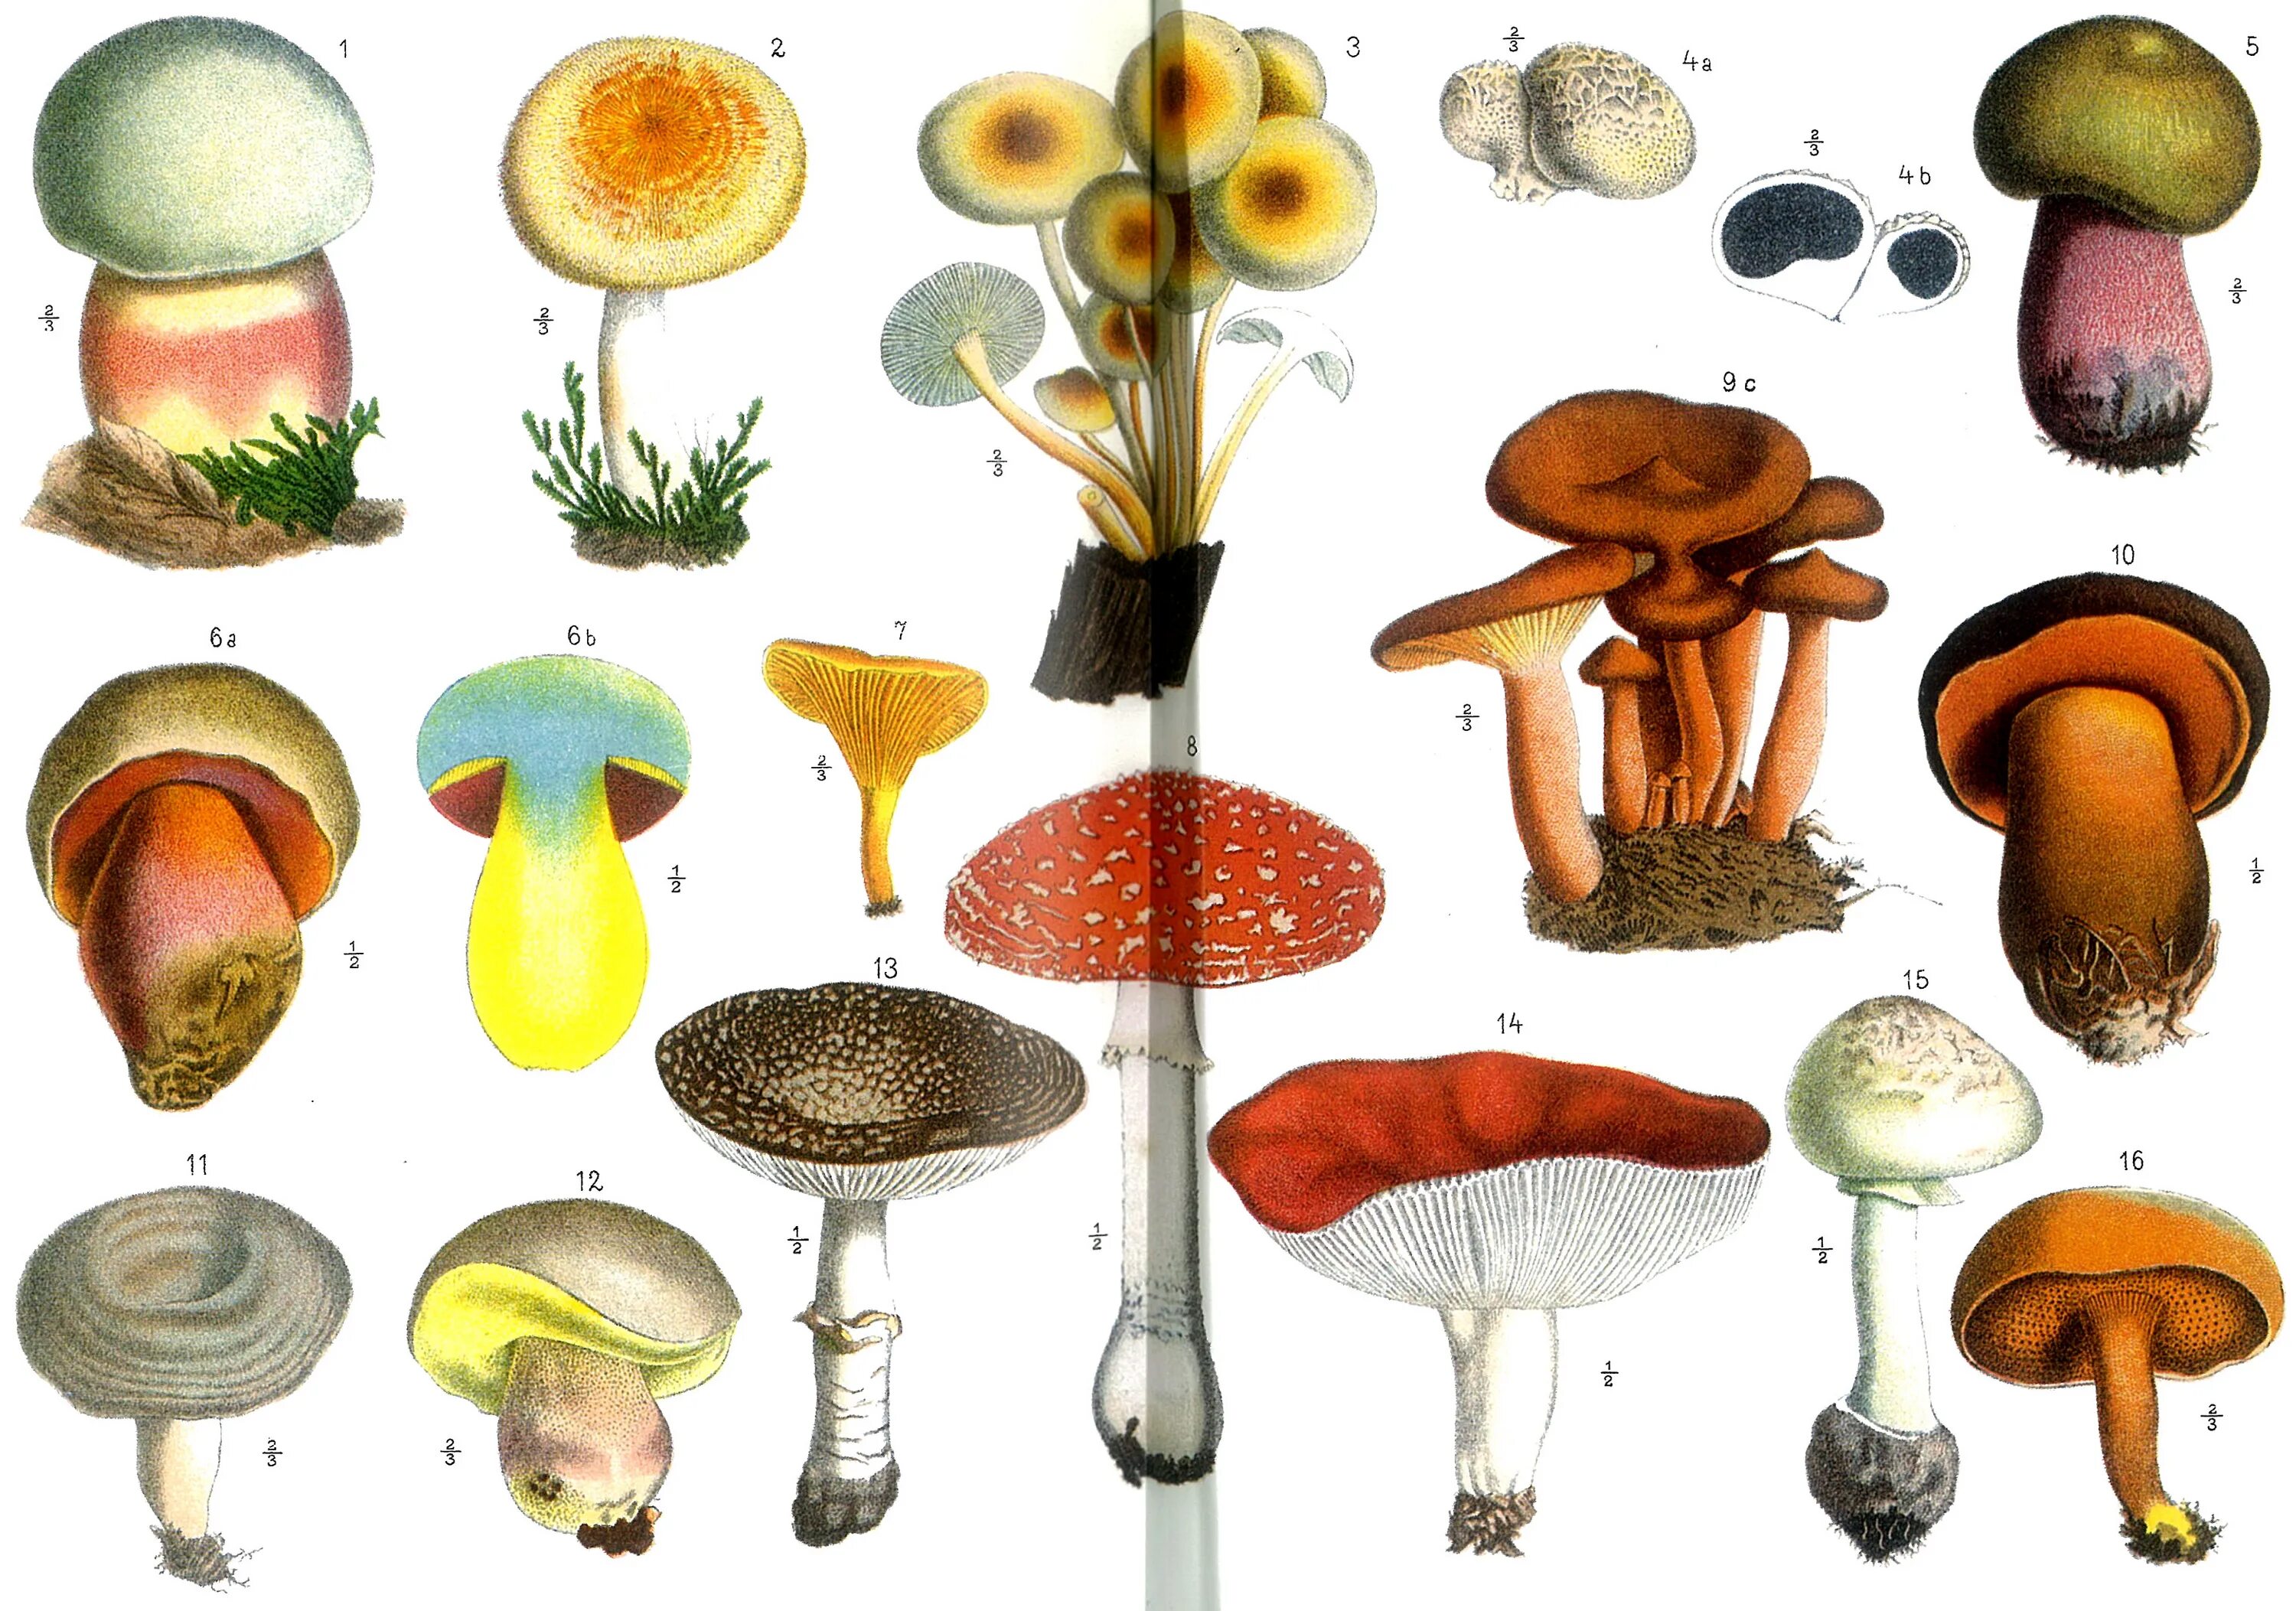 Ядовитые грибы на белом фоне. Грибы арт. Микология рисунок. Ядовитые грибы арт. Mushroom глагол